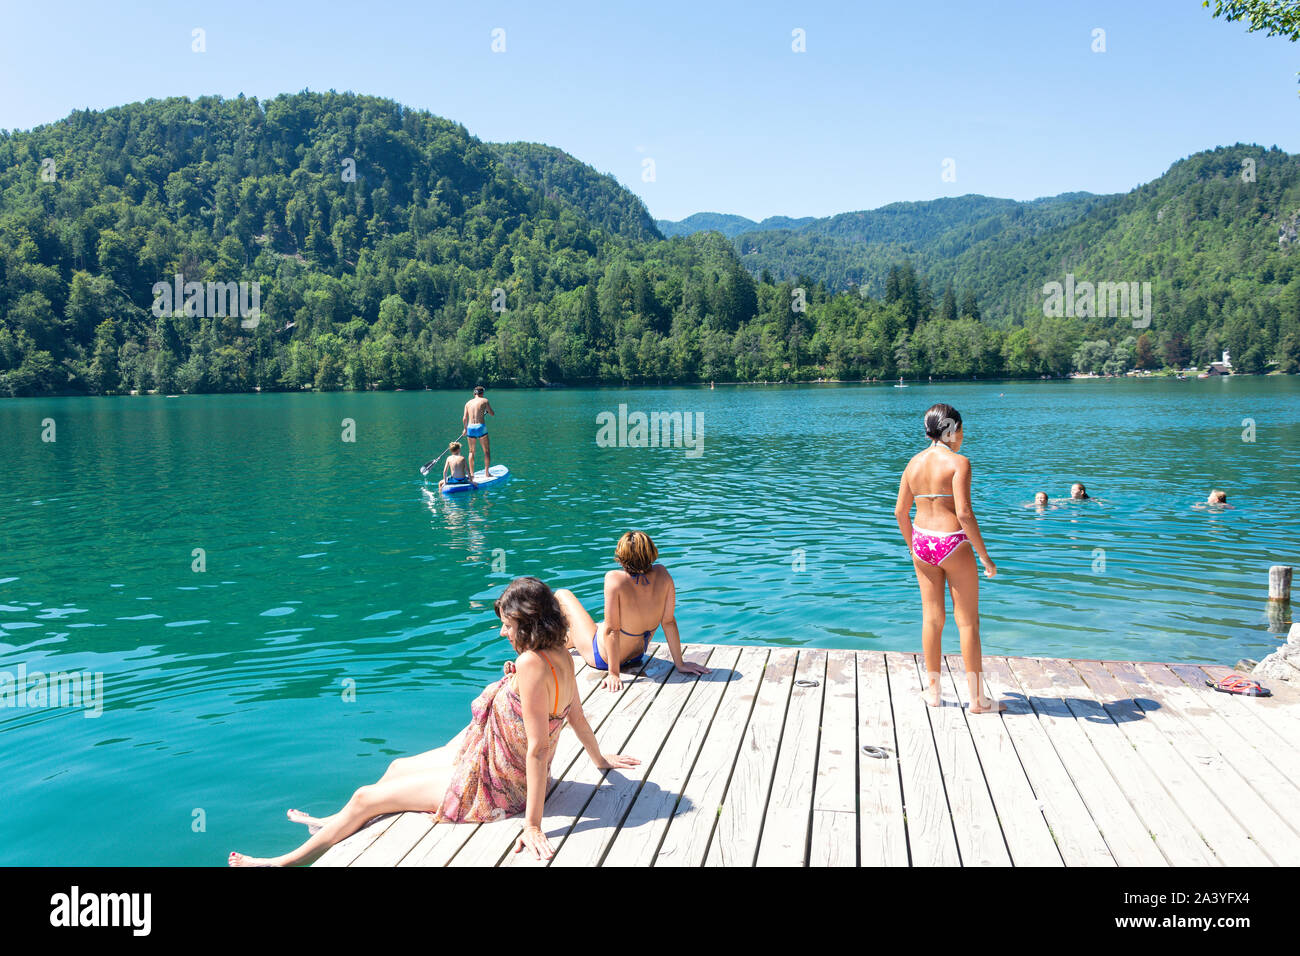 Natation et paddleboarding sur le lac, l'île de Bled (Blejski Otok), le lac de Bled, Bled, Slovénie, la région de la Haute-Carniole Banque D'Images